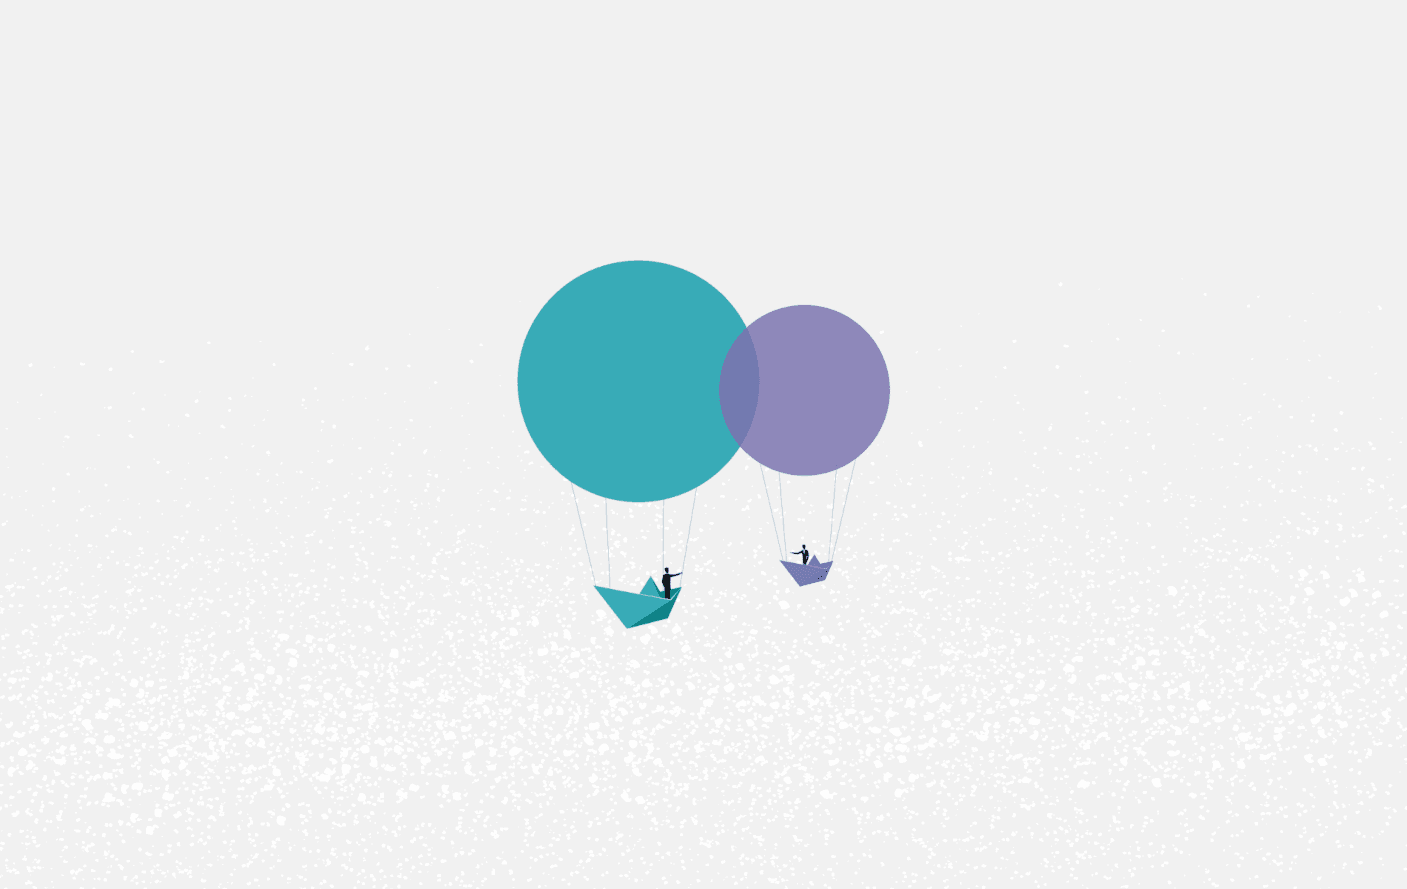 Balão verde e balão lilás, carregando uma pessoa cada um, se encontram e formam uma intersecção. O ponto comum representa o que é partnership - parceria.